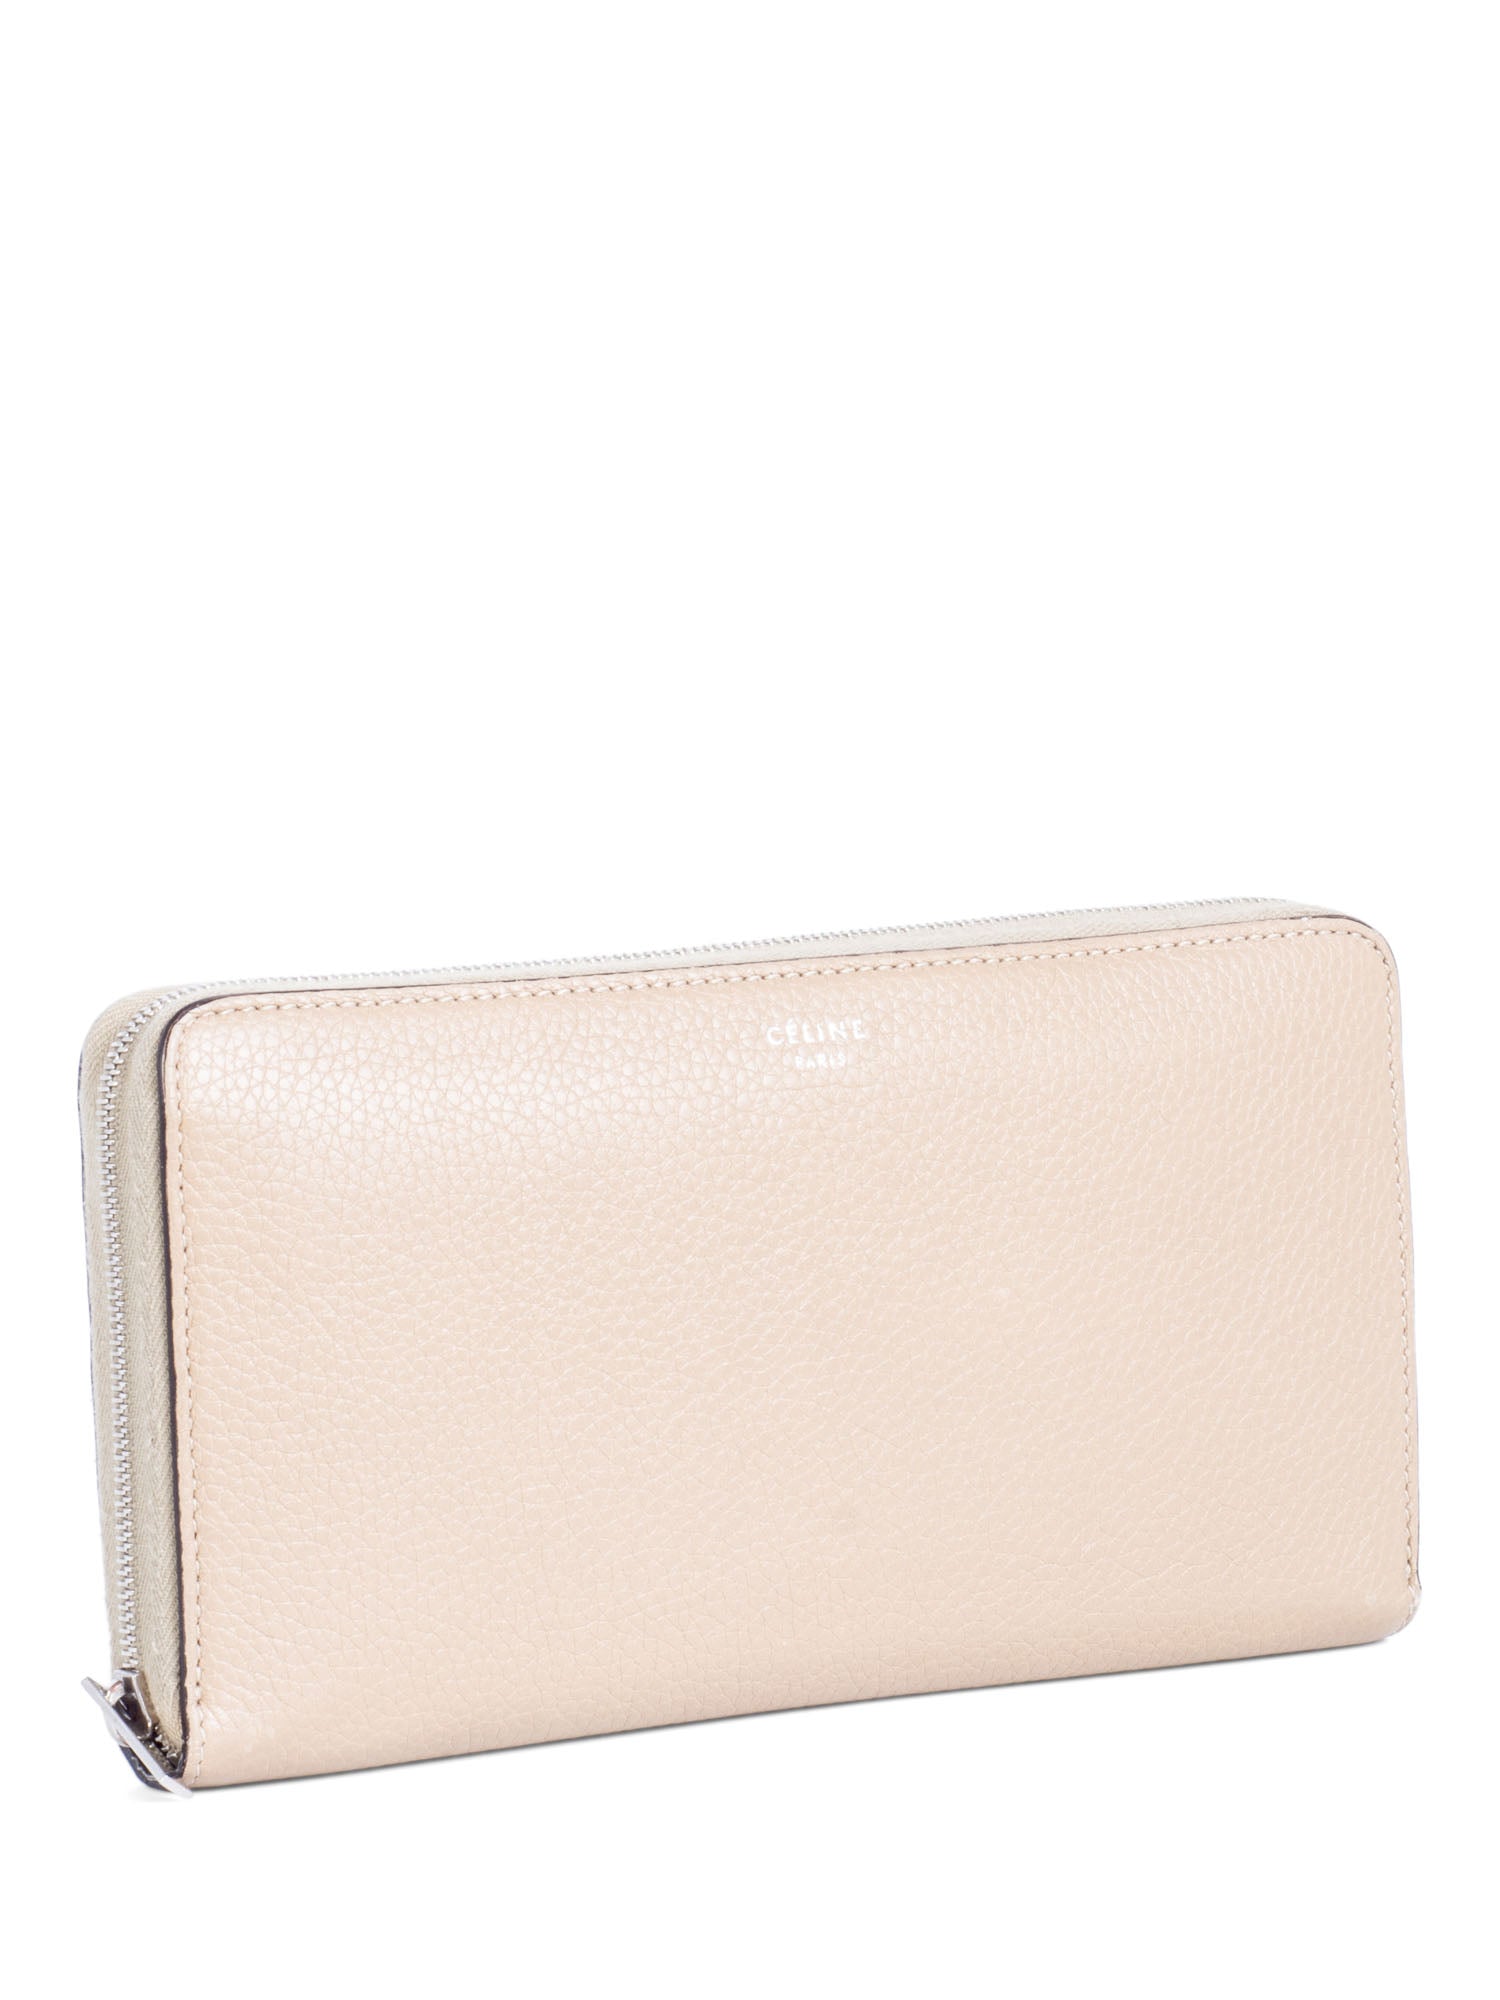 Celine Logo Leather Zippered Wallet Beige-designer resale